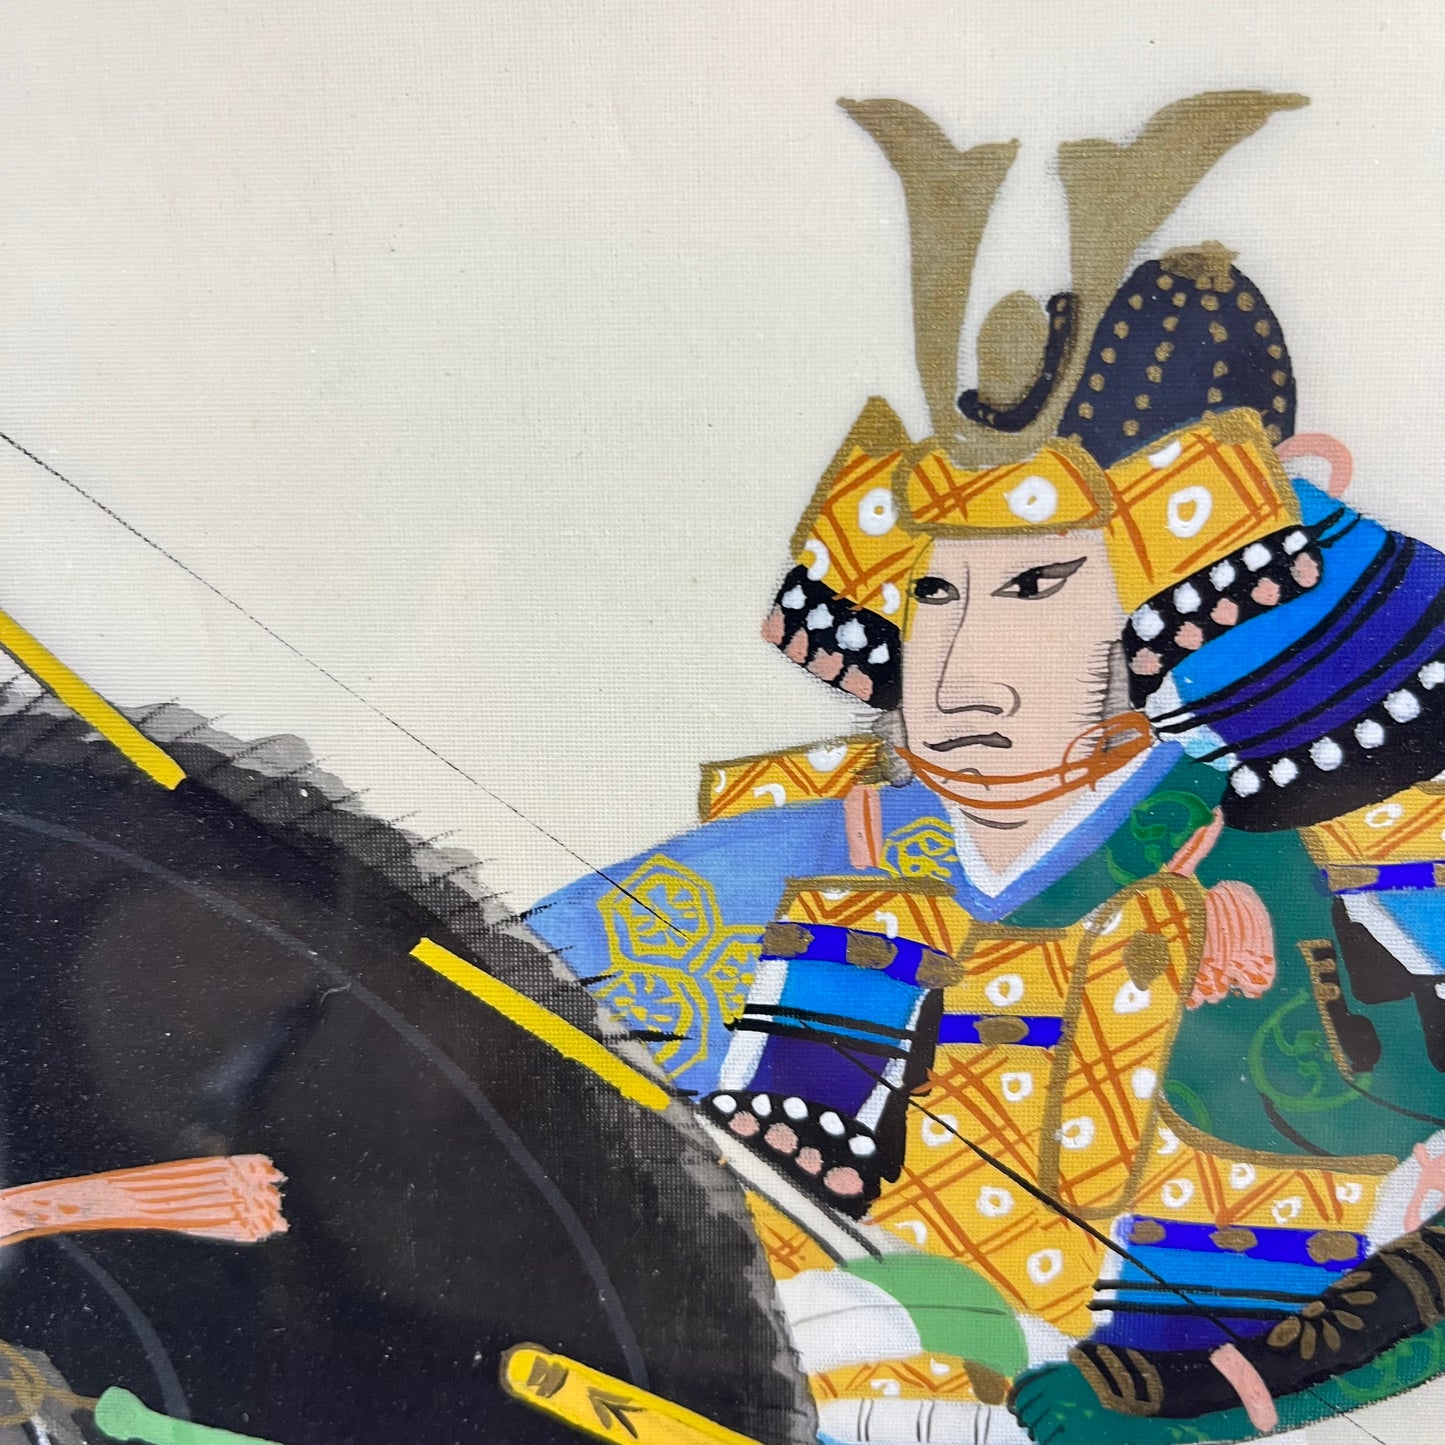 Framed Painting of Kamakura Era Samurai On Horseback 17"